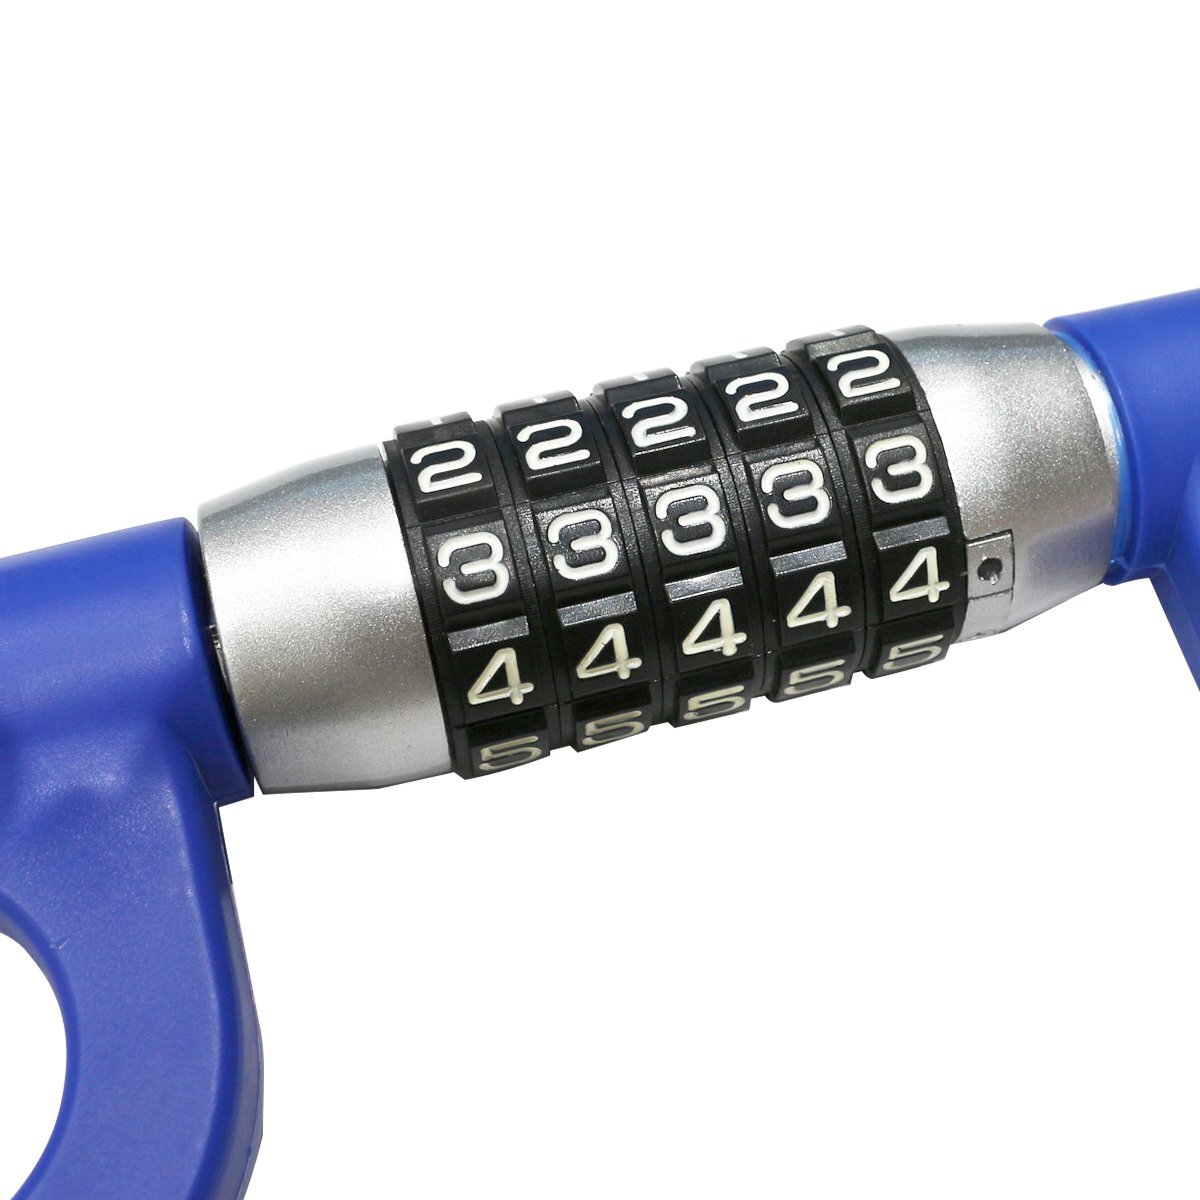 【 доставка бесплатно 】 циферблат  ...  руль   руль    рок   автомобиль    воровство  предотвращение   ключ  ненужный   PIN-код (пароль)   реле ...  контрмера   безопасность  ...  синий   синий  